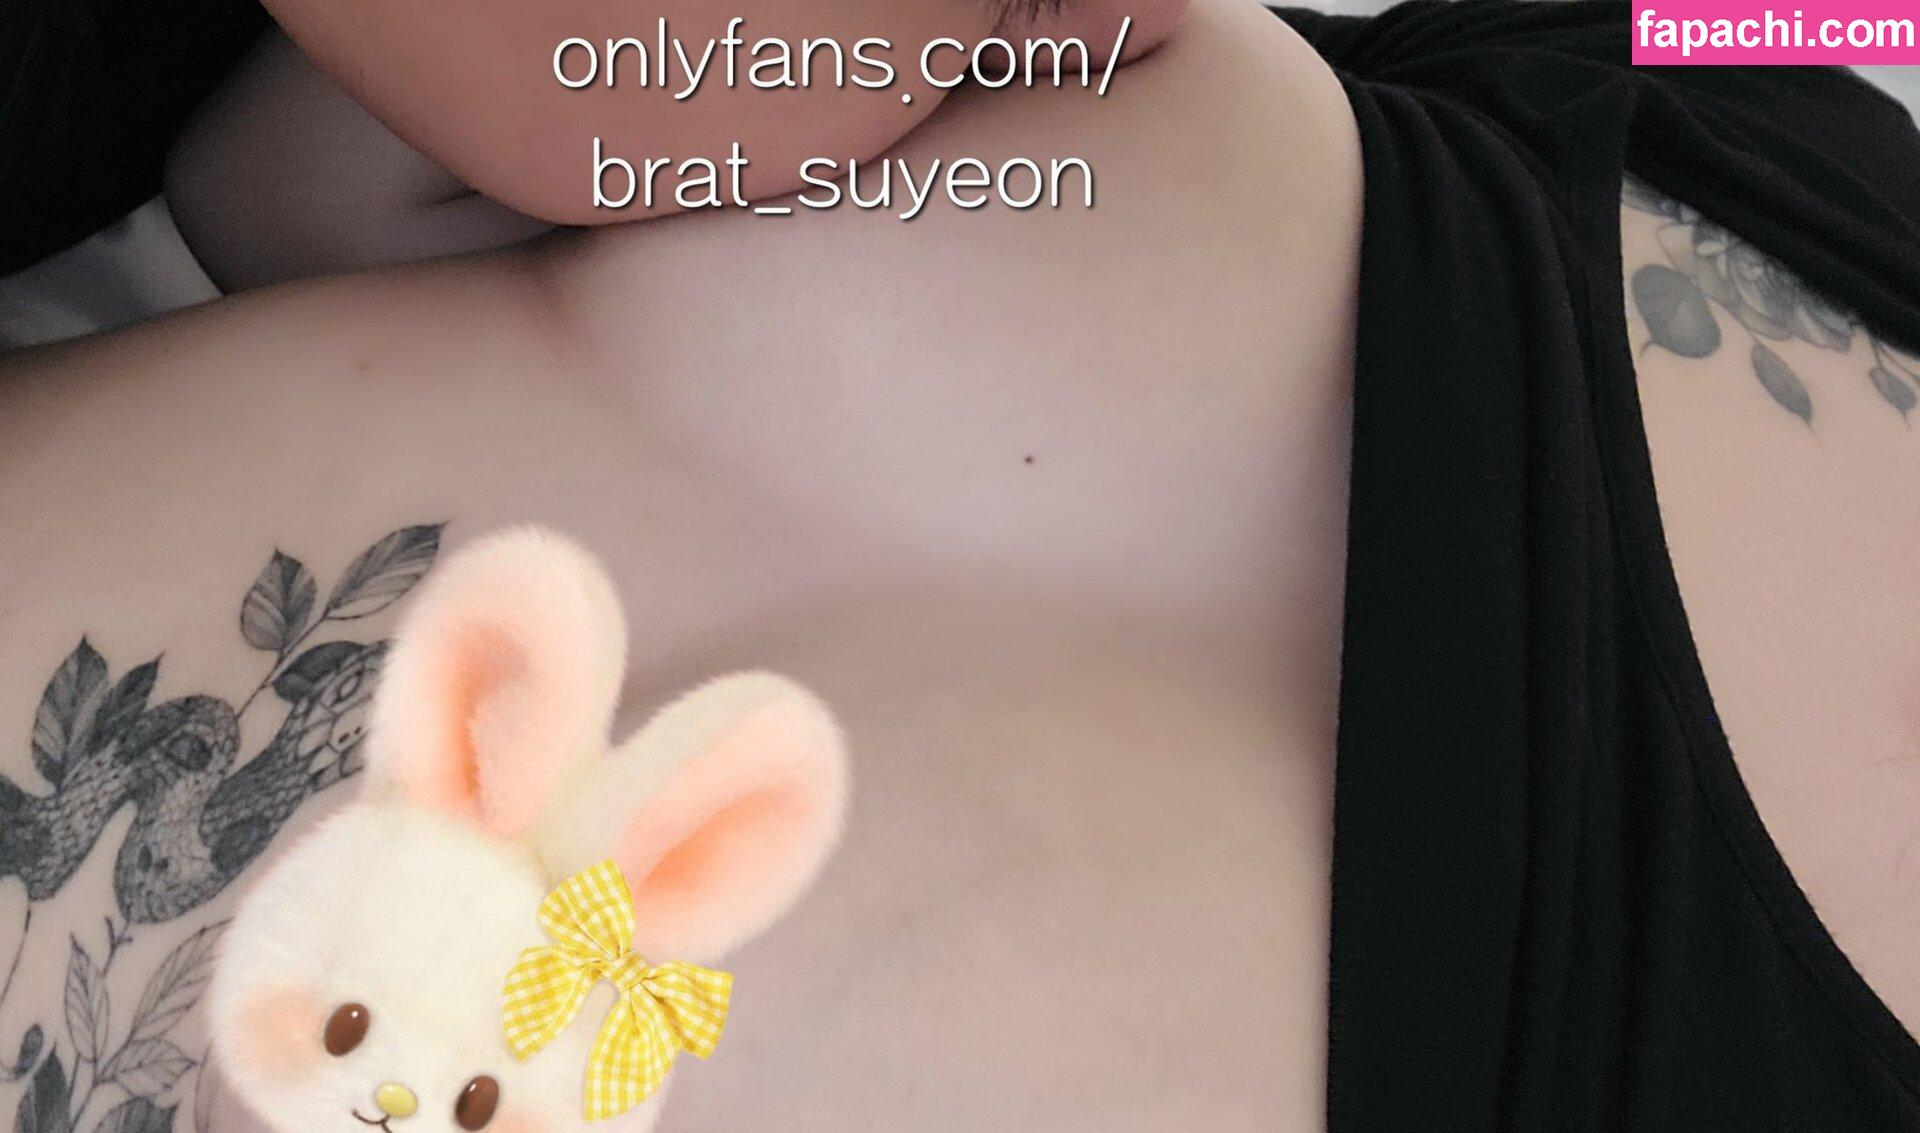 BratSuyeon / Brat_suyeon / brat leaked nude photo #0026 from OnlyFans/Patreon